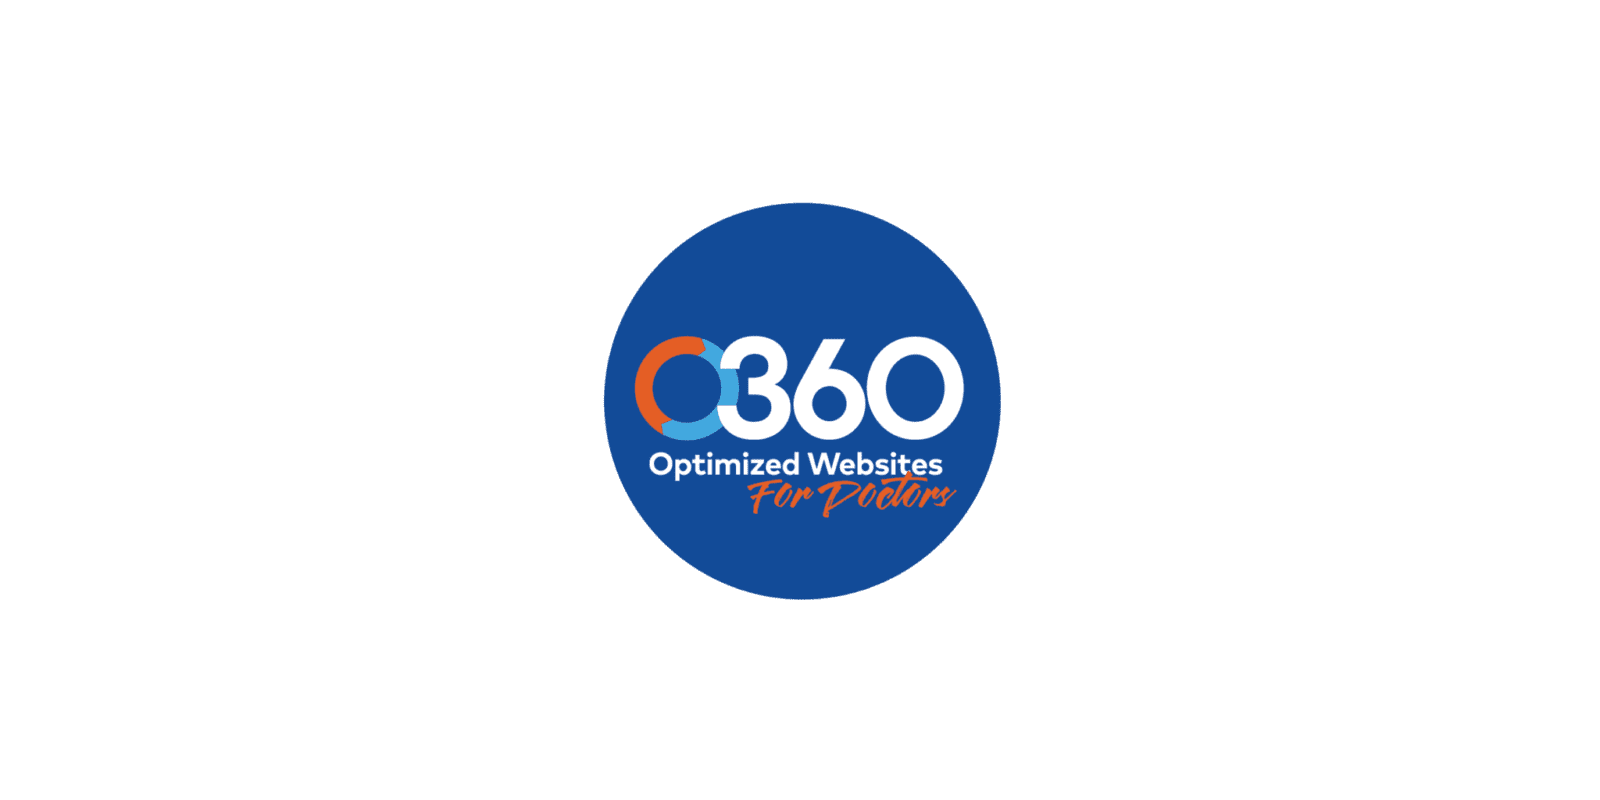 O360 logo